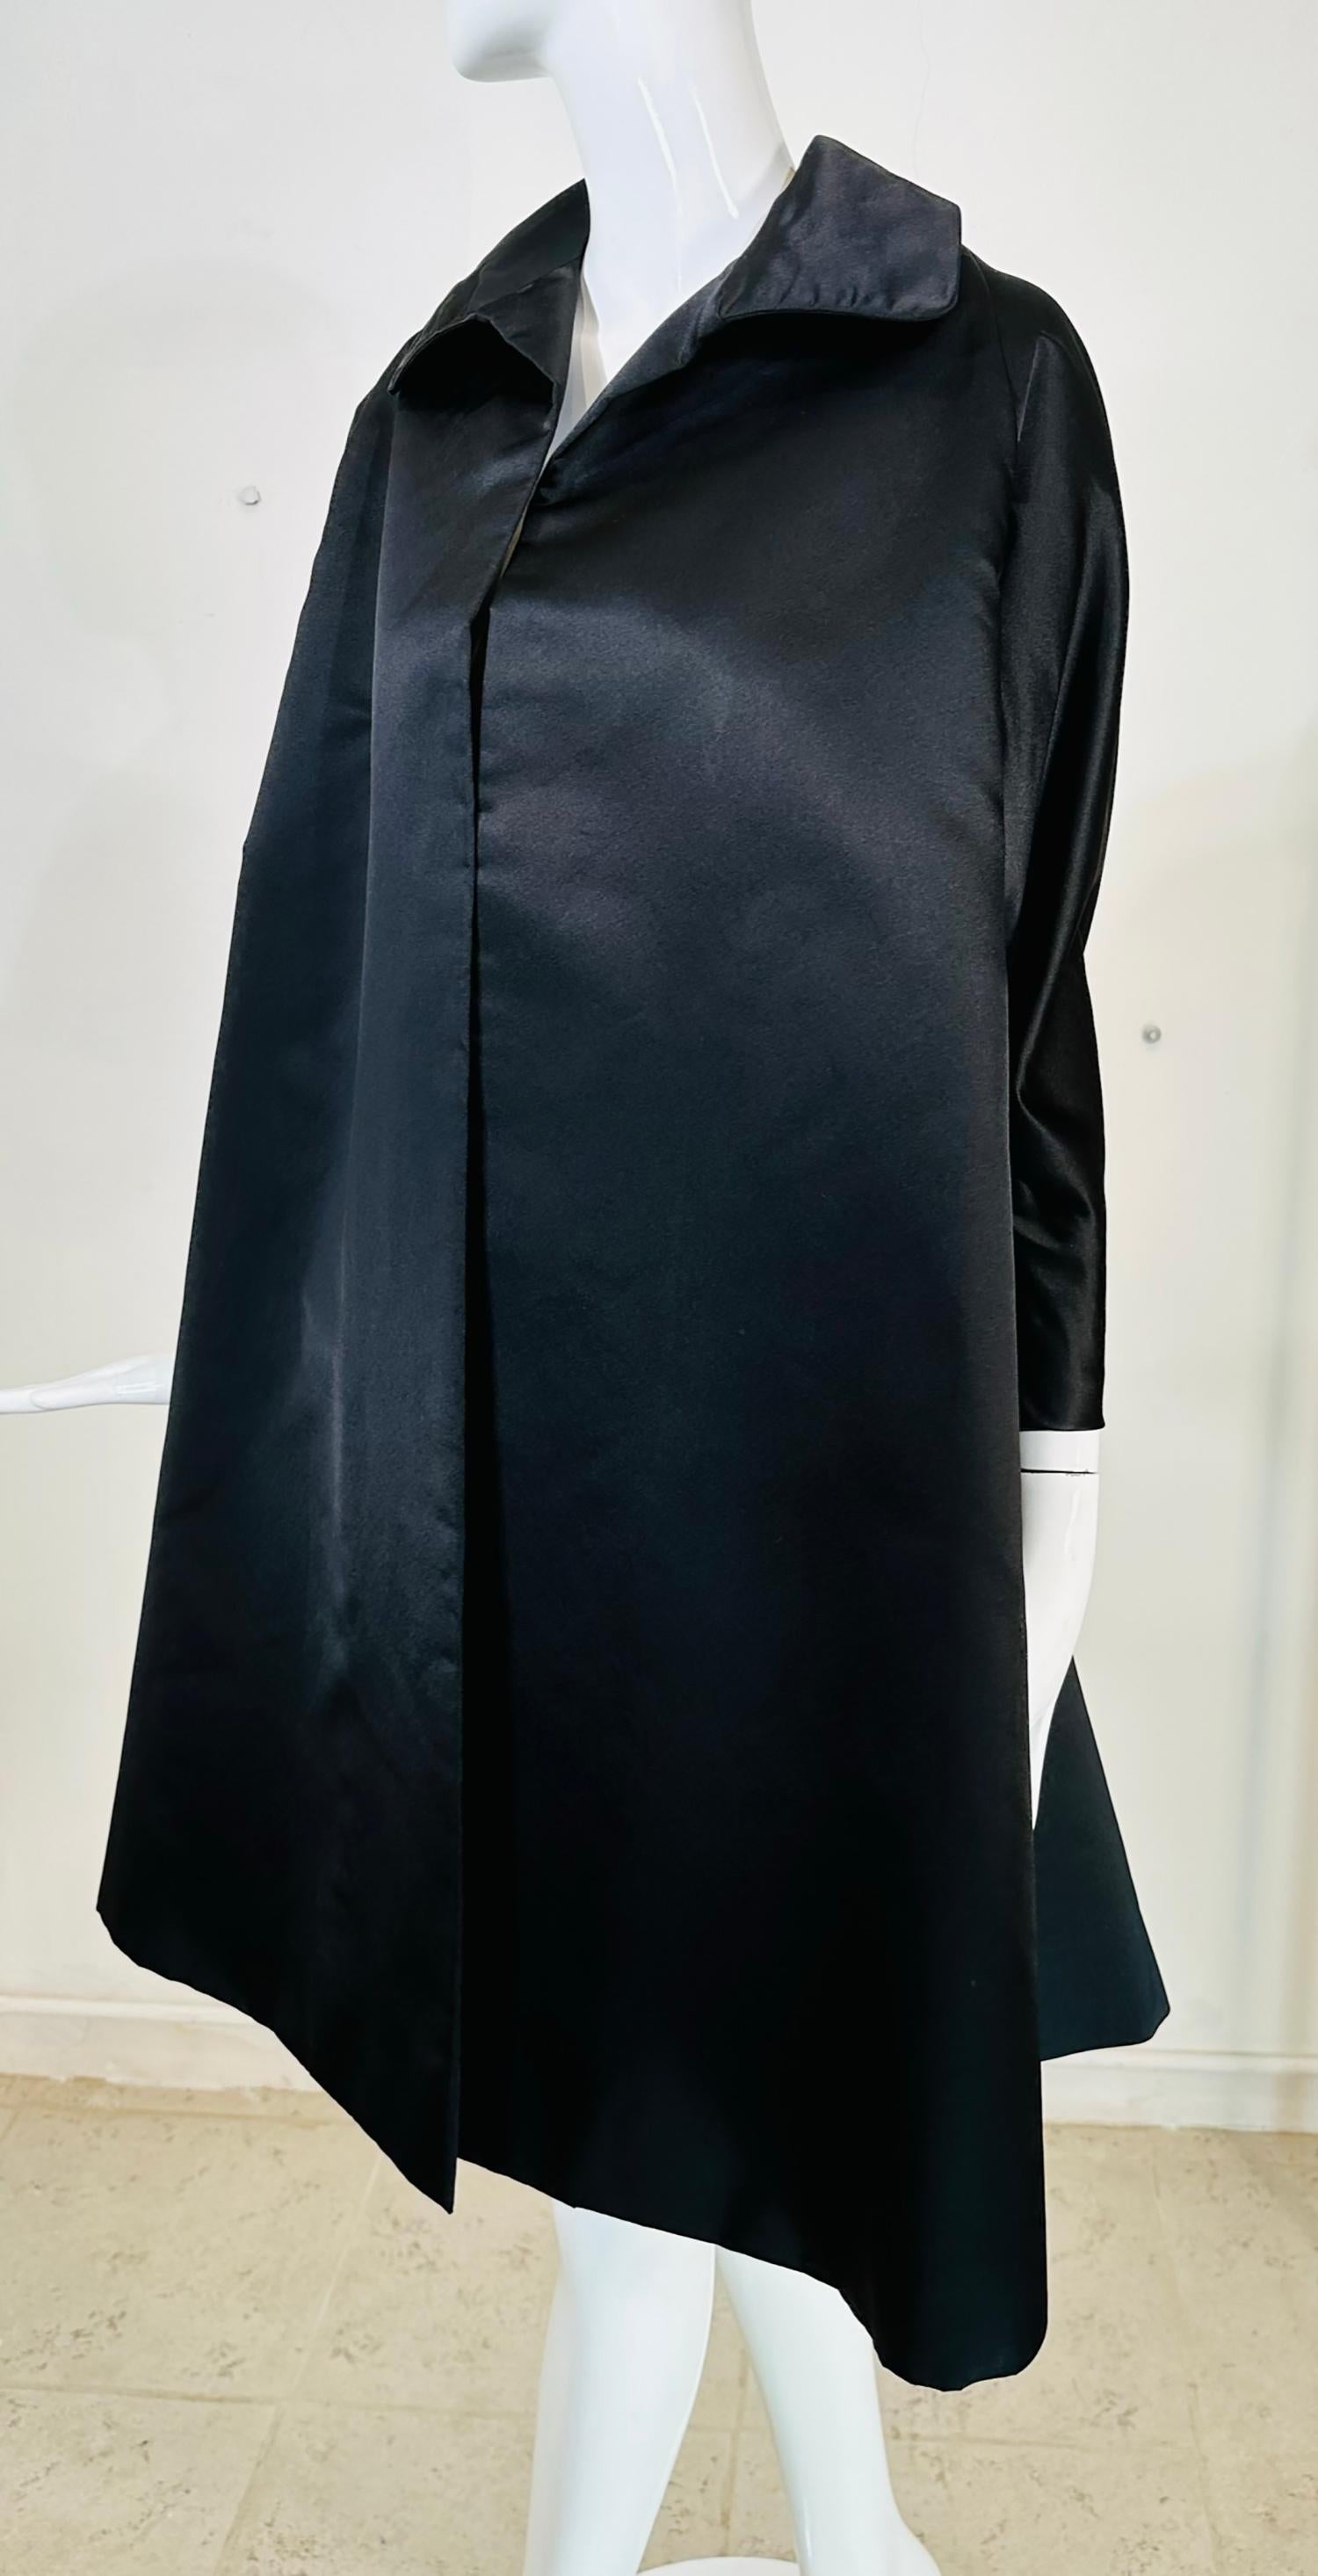 Manteau du soir en satin de soie noire de forme trapézoïdale de Bergdorf Goodman, datant des années 1950. Ce magnifique manteau est parfait pour toute occasion spéciale, je le considérerais comme un poids moyen pour l'automne ou le début de l'hiver.